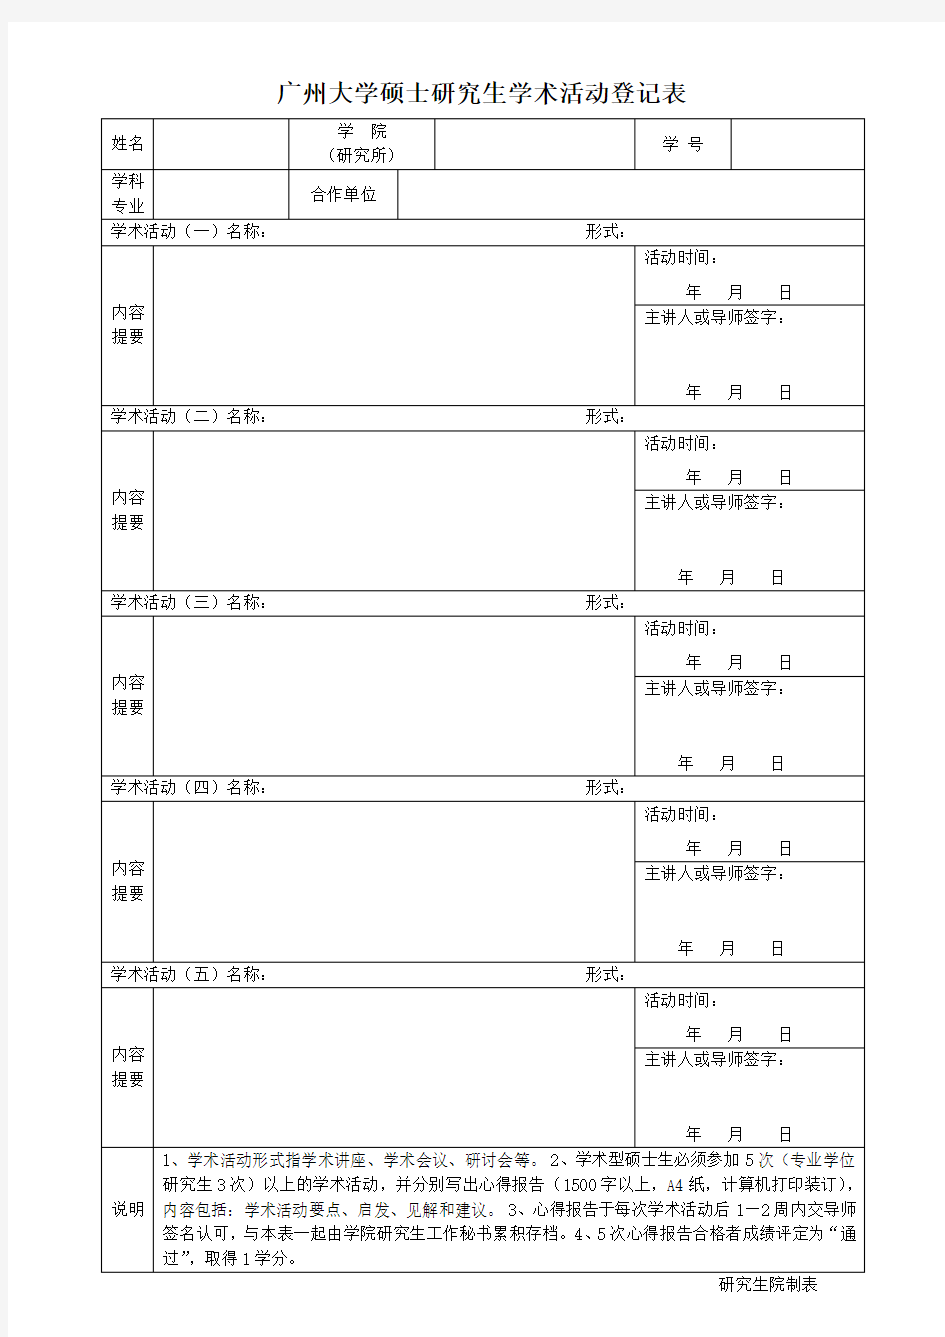 广州大学硕士研究生学术活动登记表